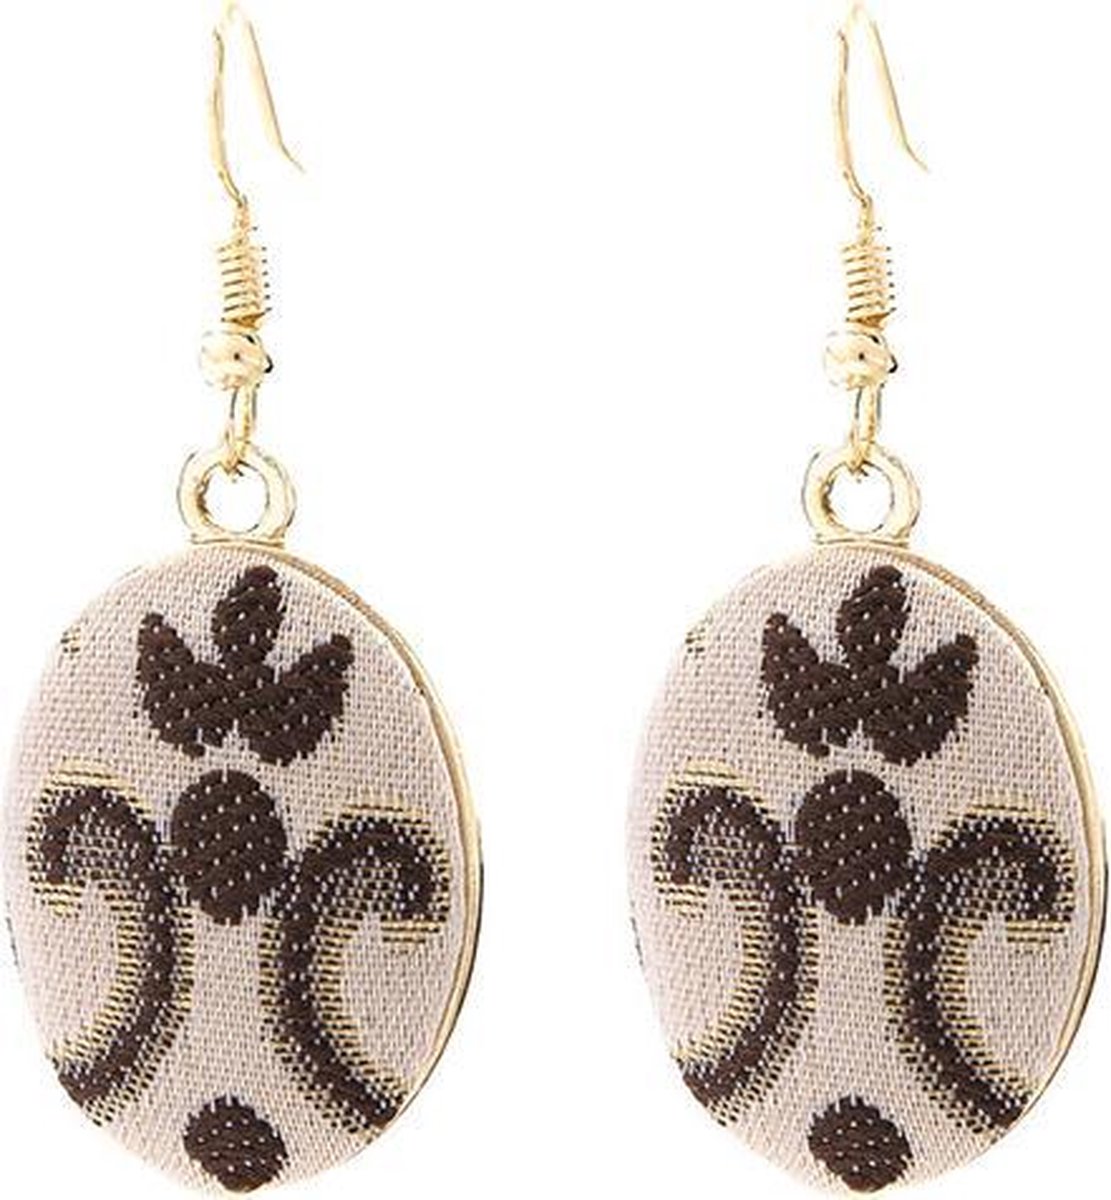 Viva Jewellery oorhangers ovaal met werkje en beige velours stof.